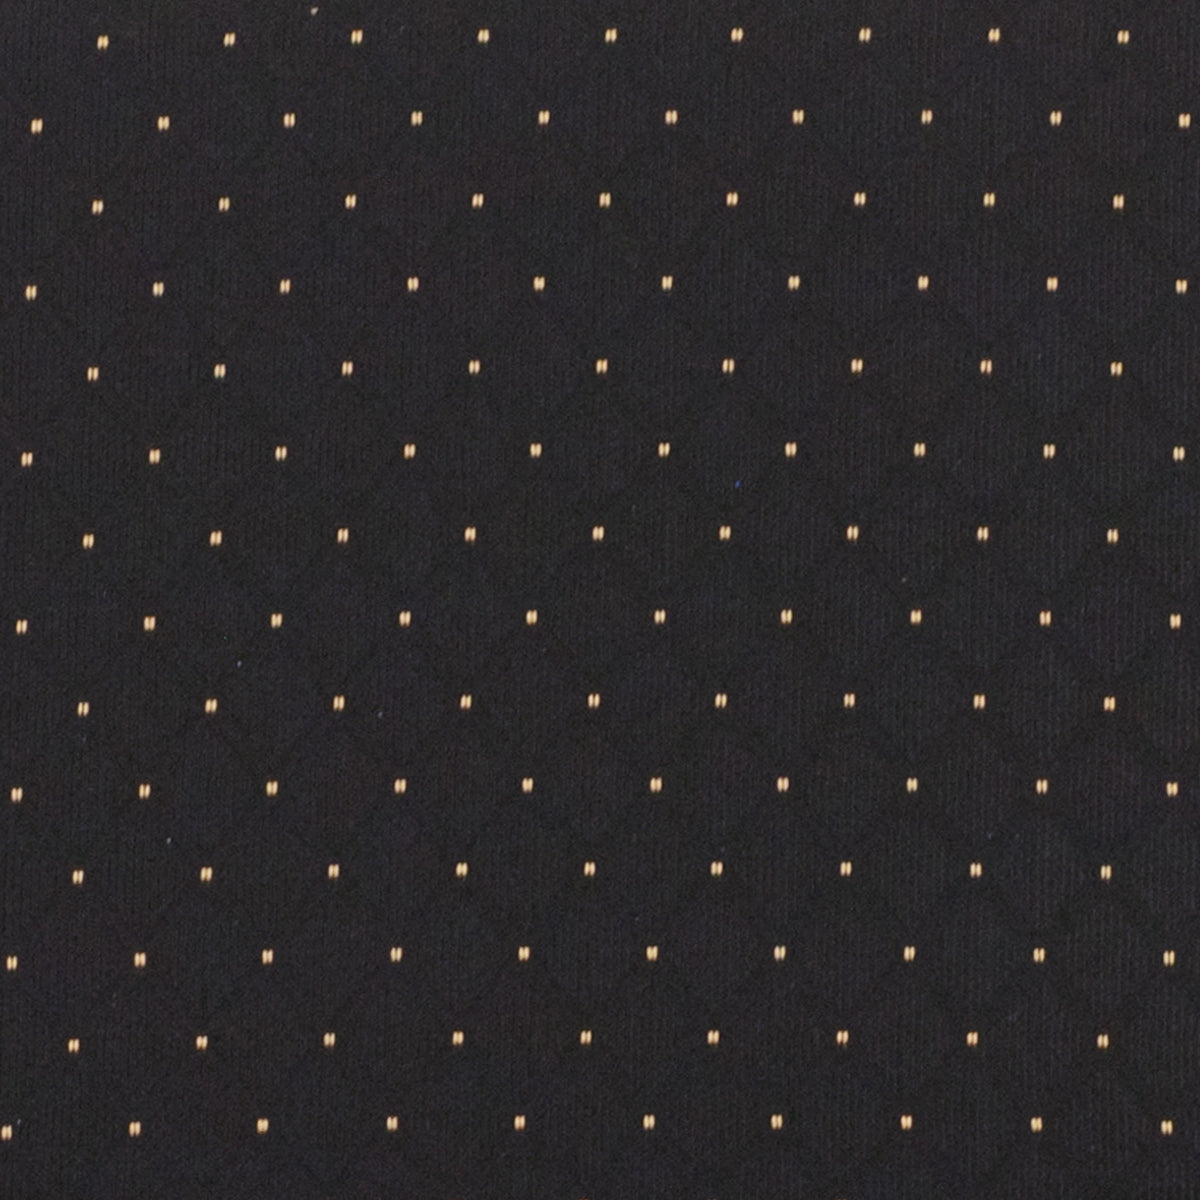 Black Dot Patterned Fabric/Gold Vein Frame |#| 21inchW Church Chair in Black Dot Patterned Fabric with Cup Book Rack - Gold Frame